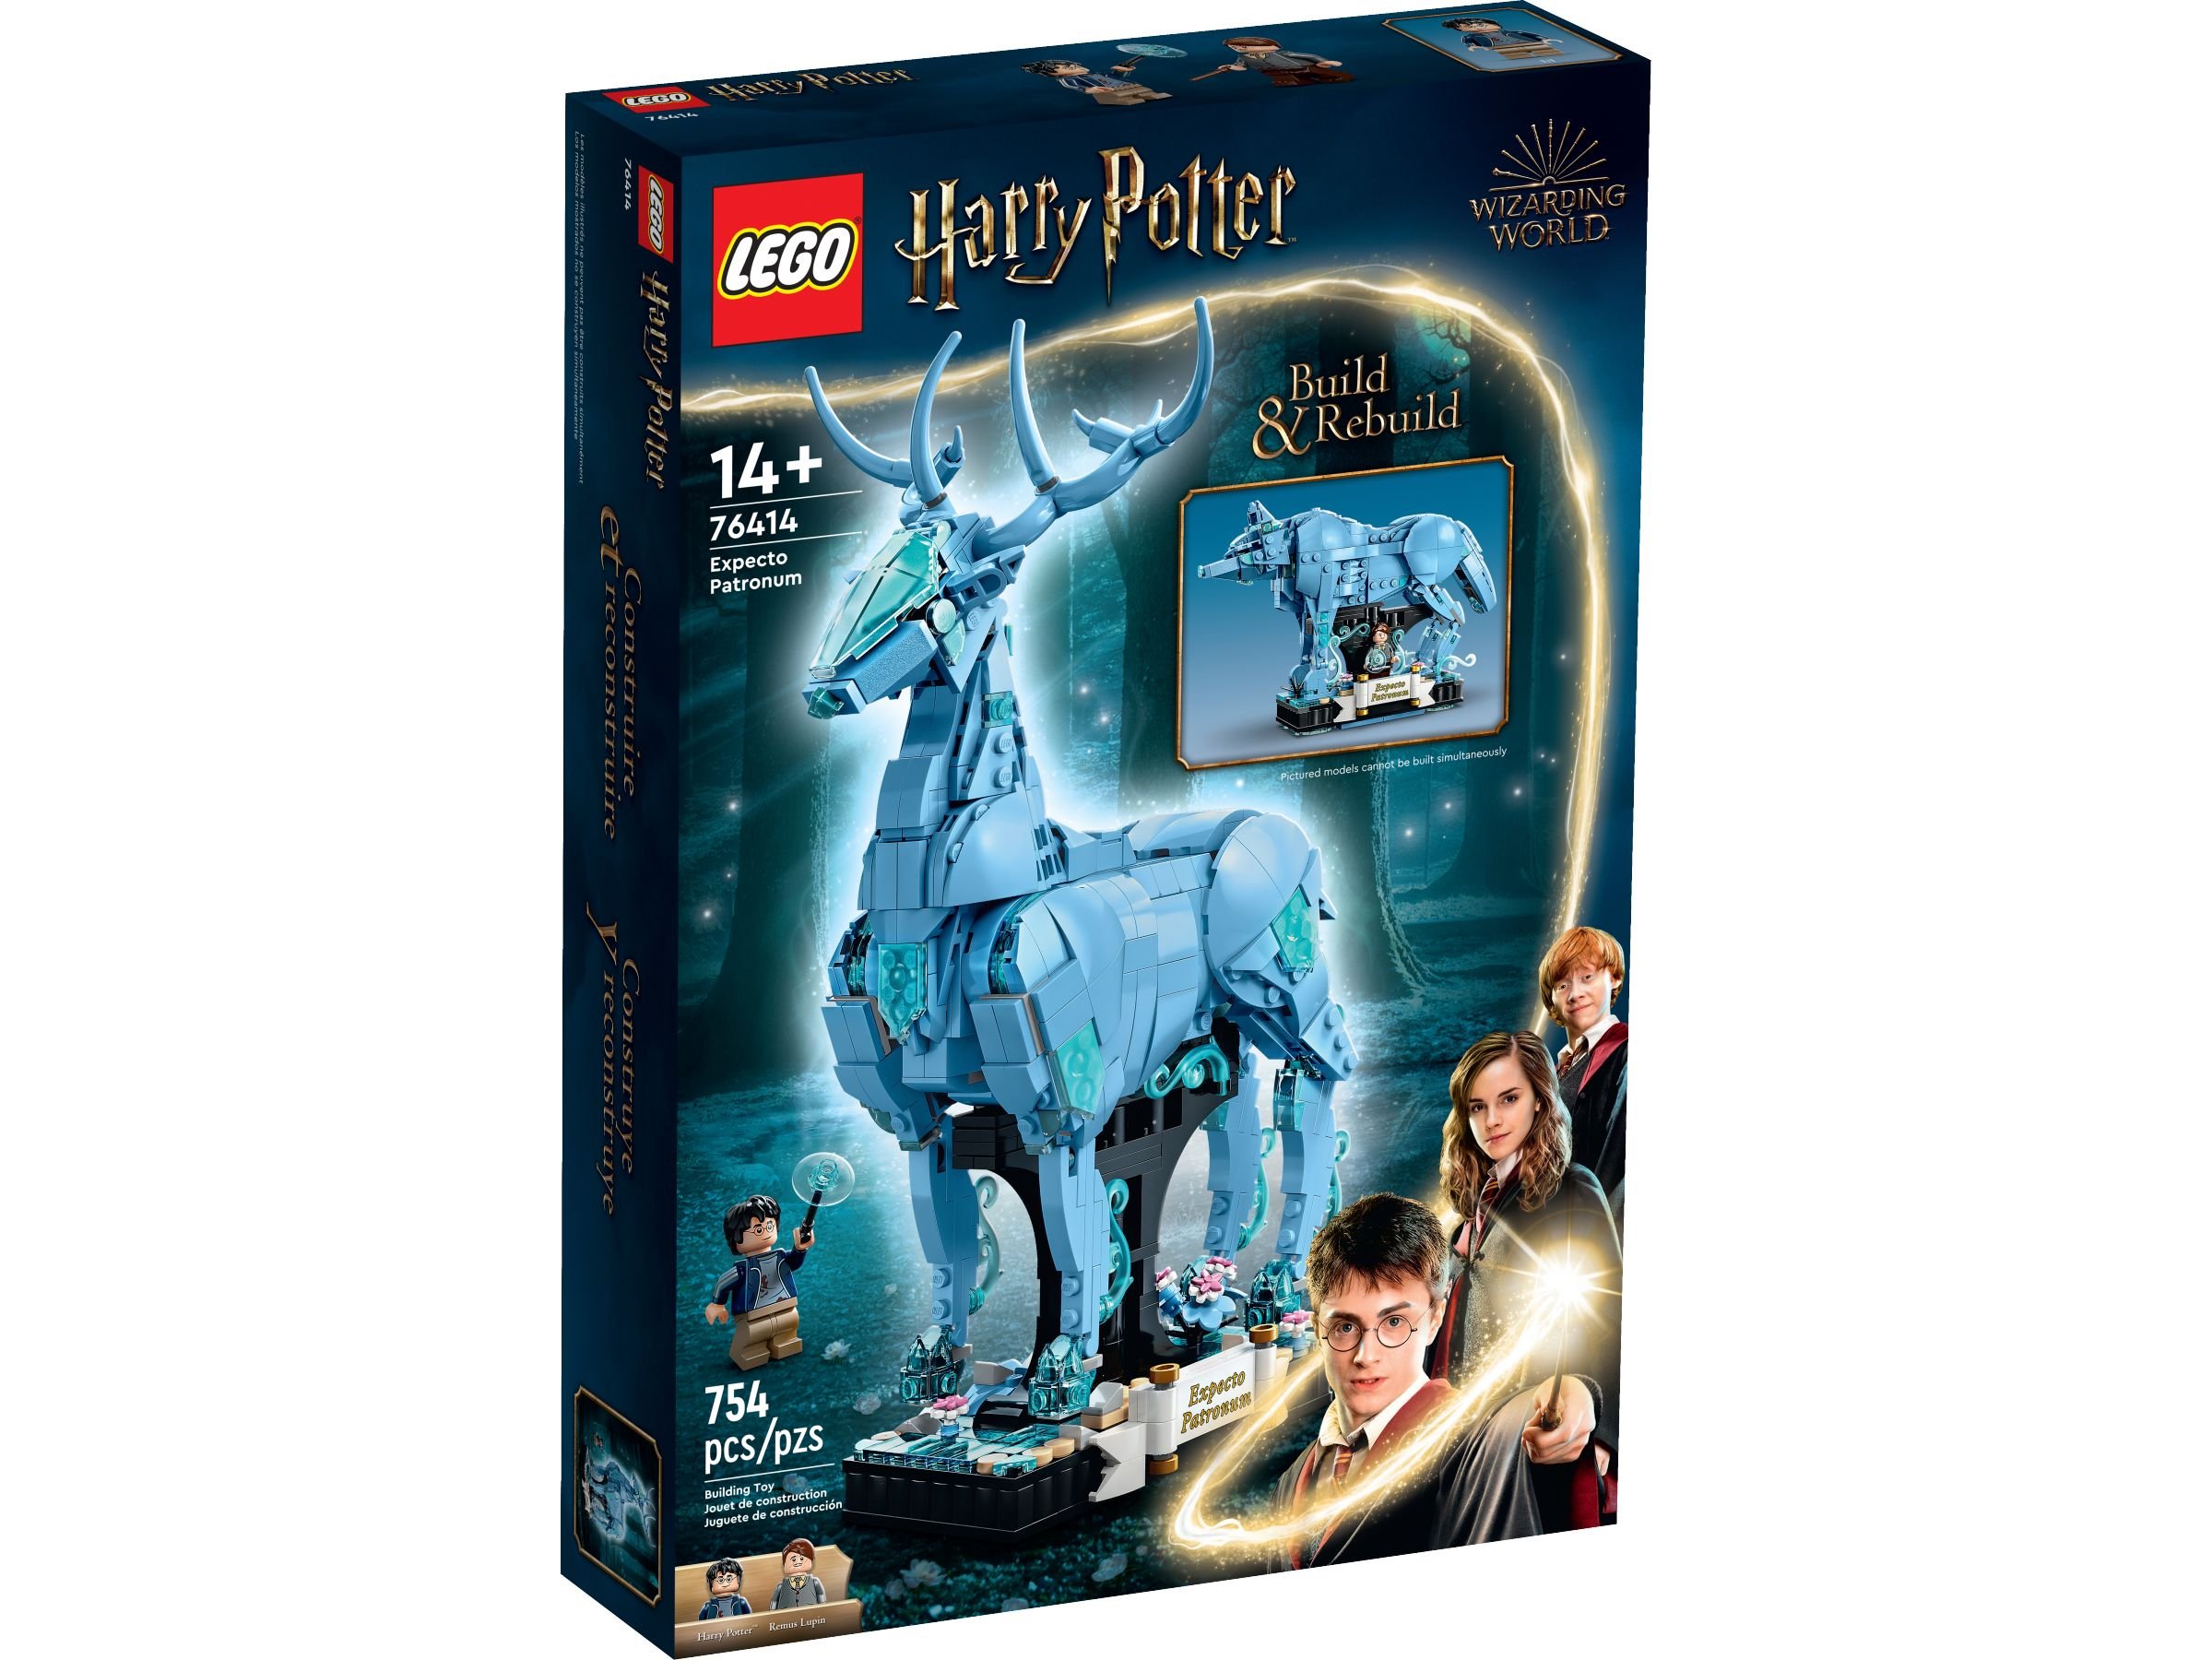 LEGO Harry Potter 76414 Expecto Patronum LEGO_76414_Box1_v39.jpg